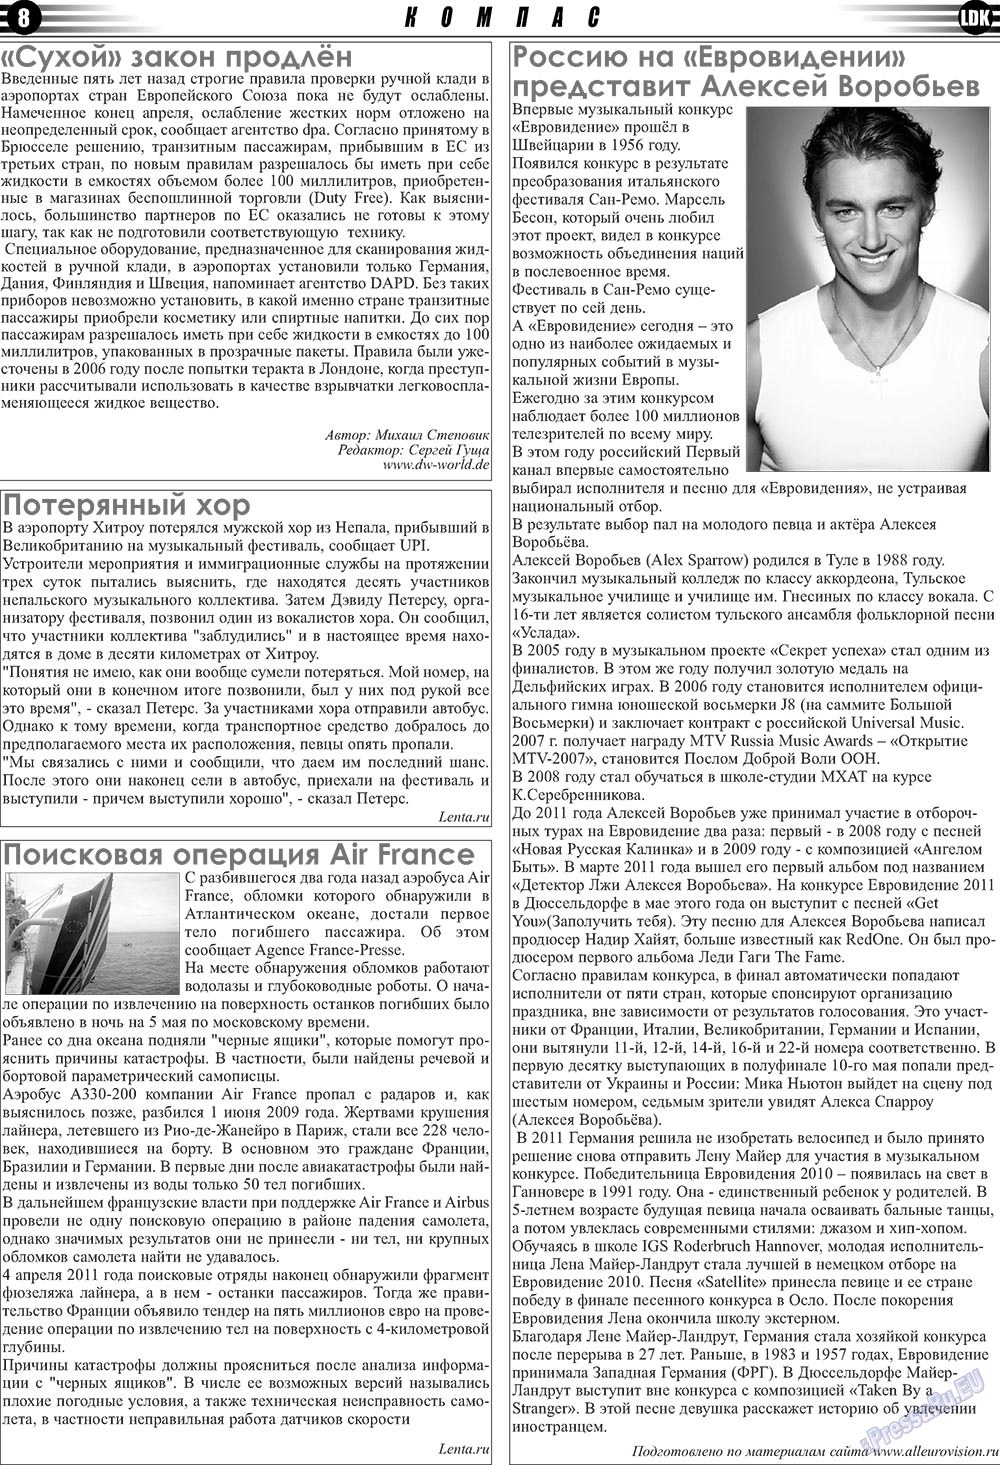 LDK по-русски (газета). 2011 год, номер 3, стр. 8